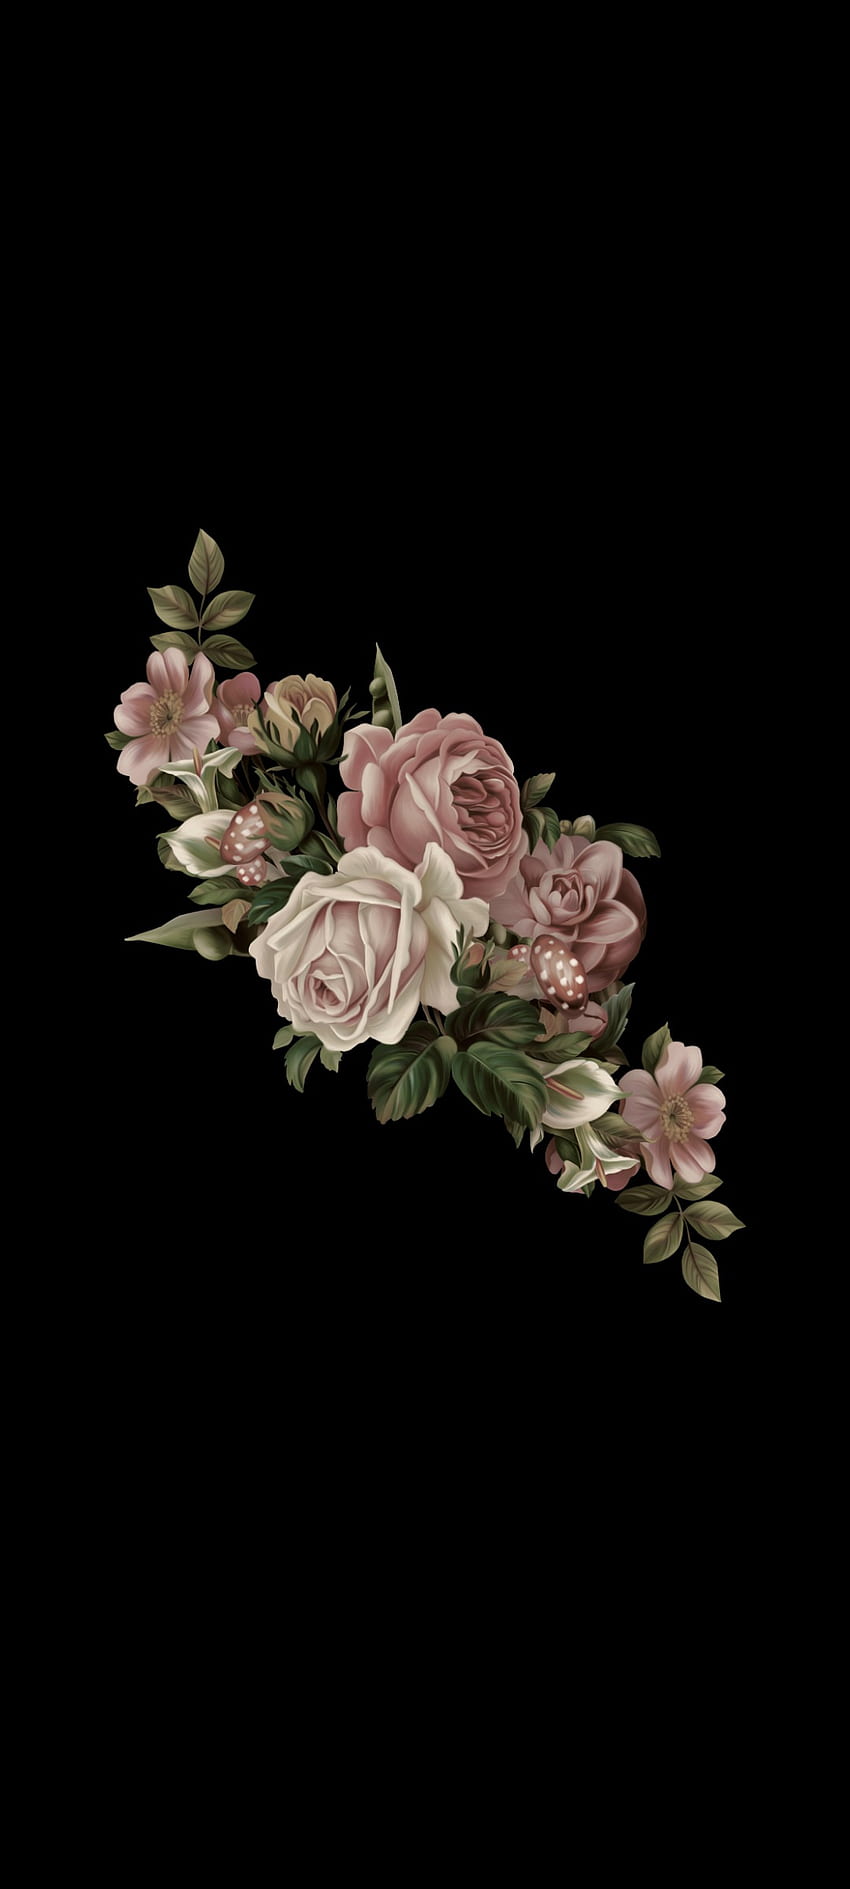 Mawar Gelap, estetis, rosas, sedih wallpaper ponsel HD